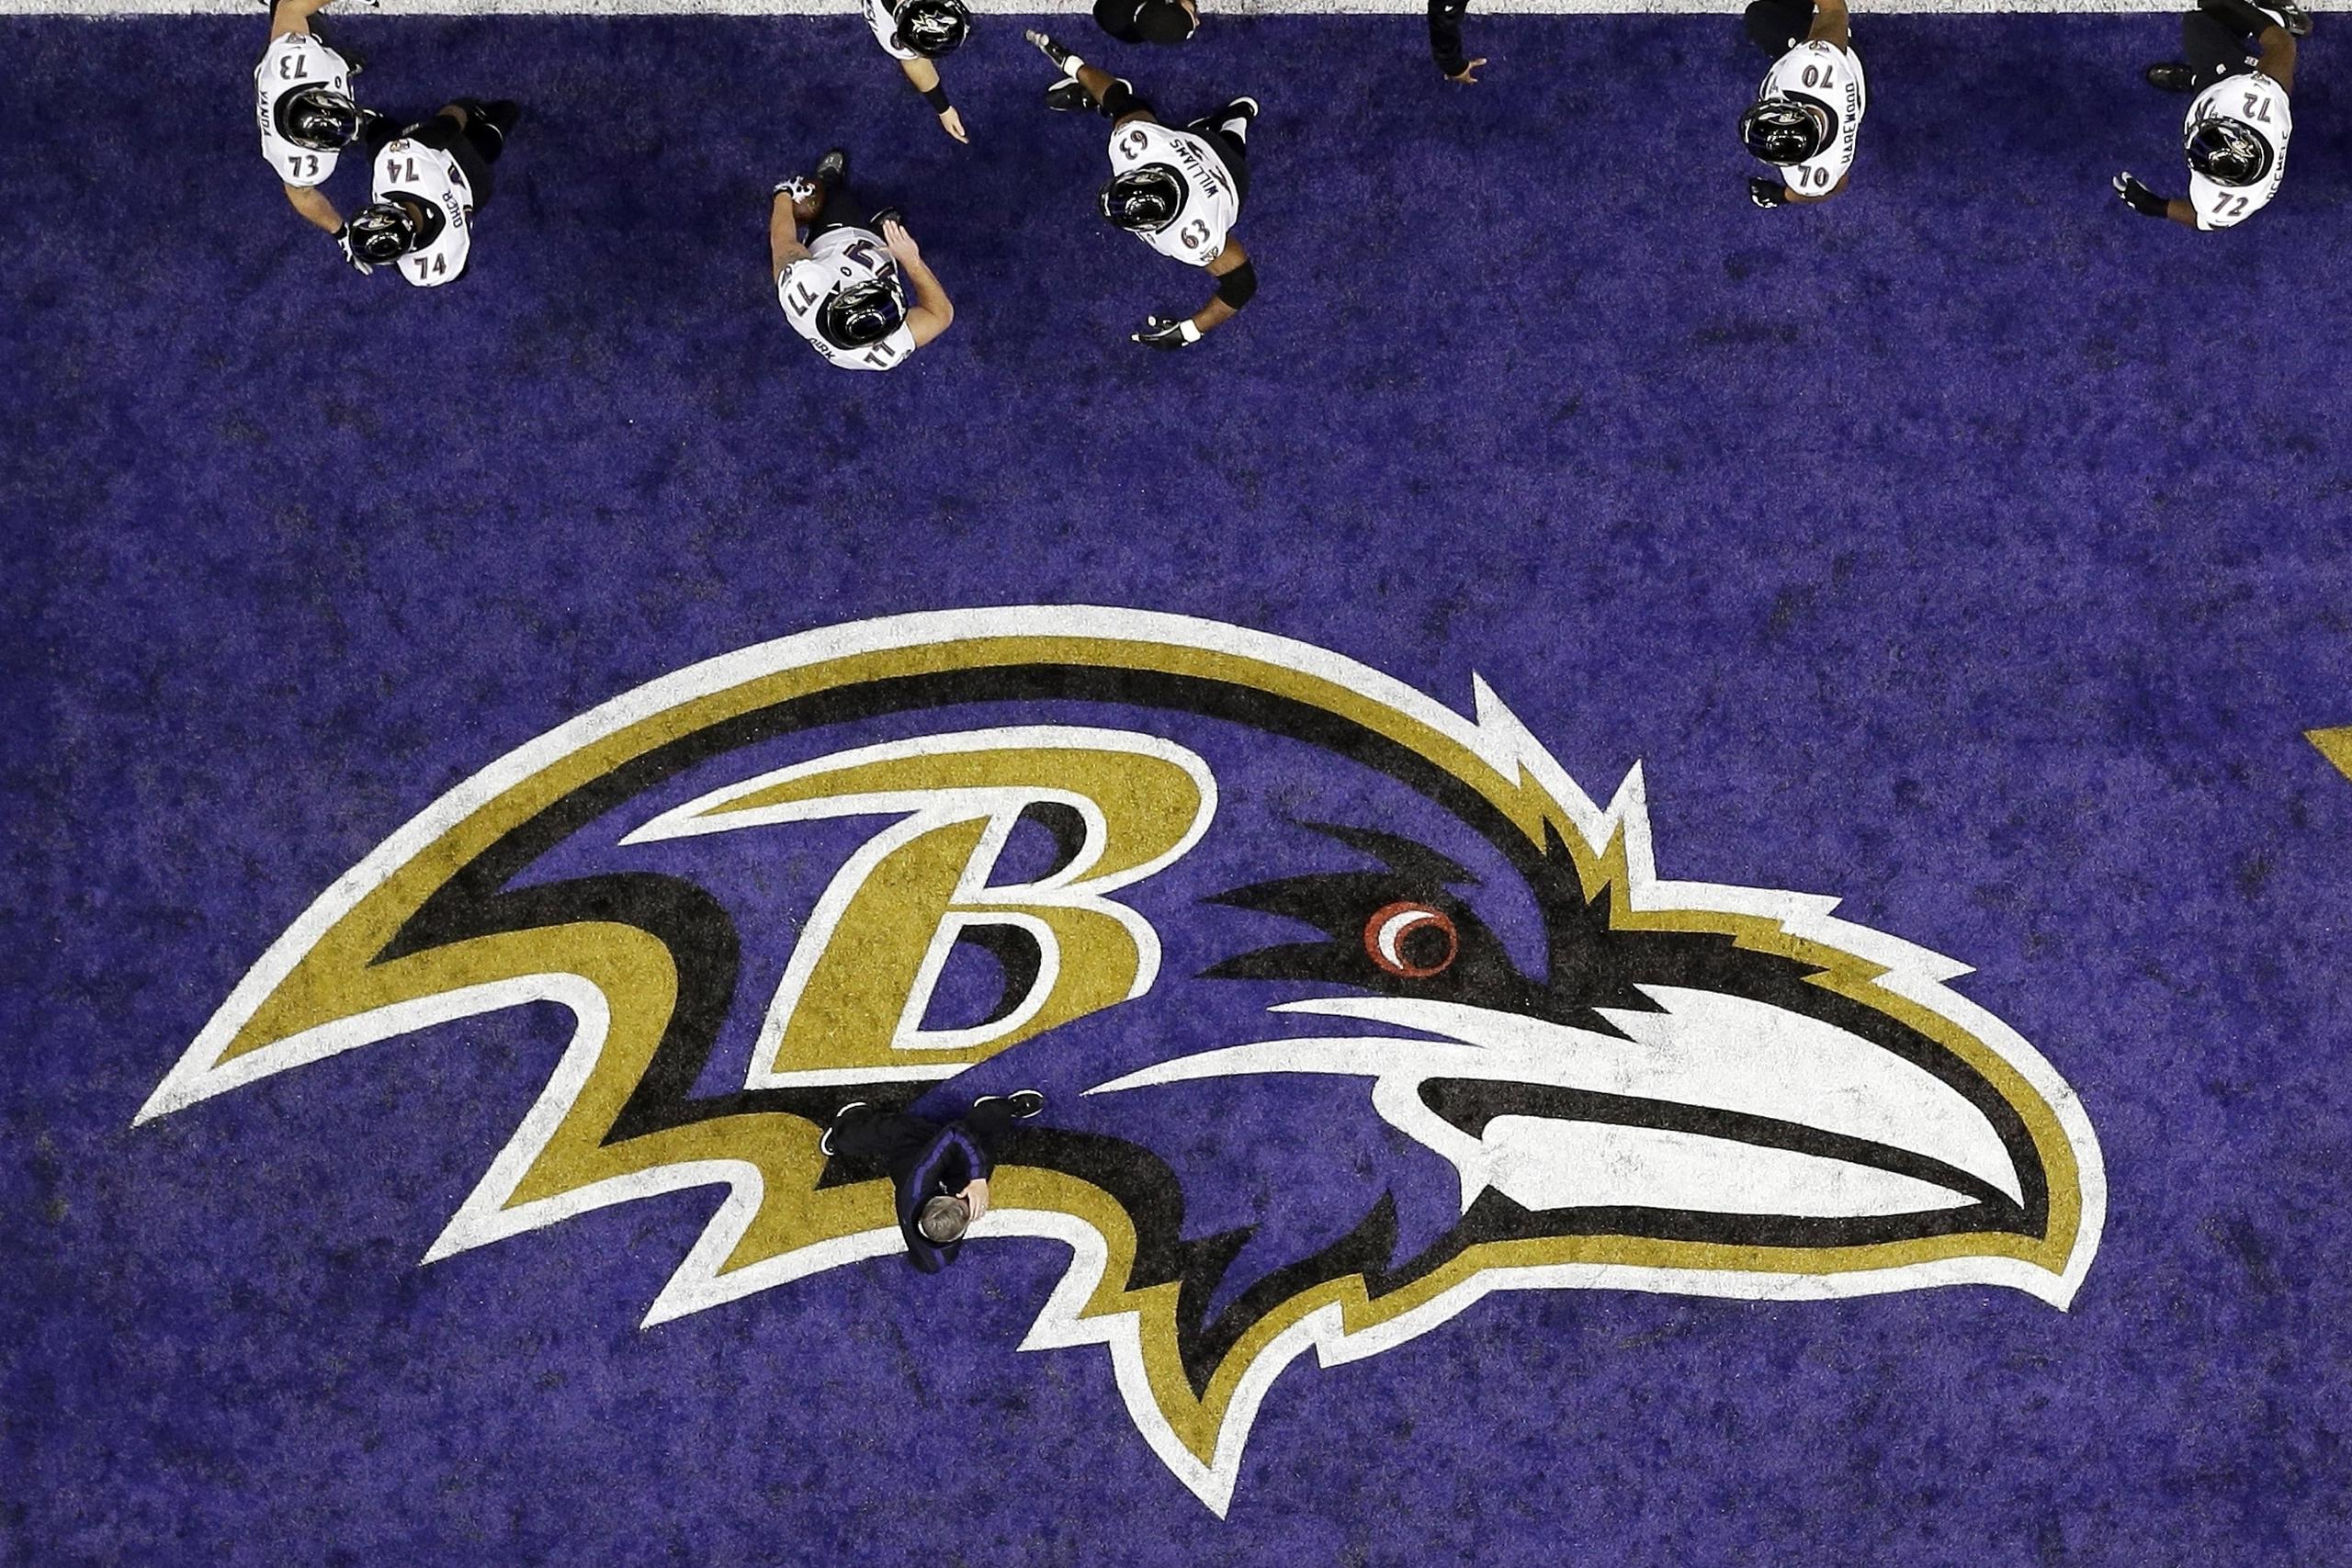 El castigo a los Ravens fue reportado primero por NFL Network.